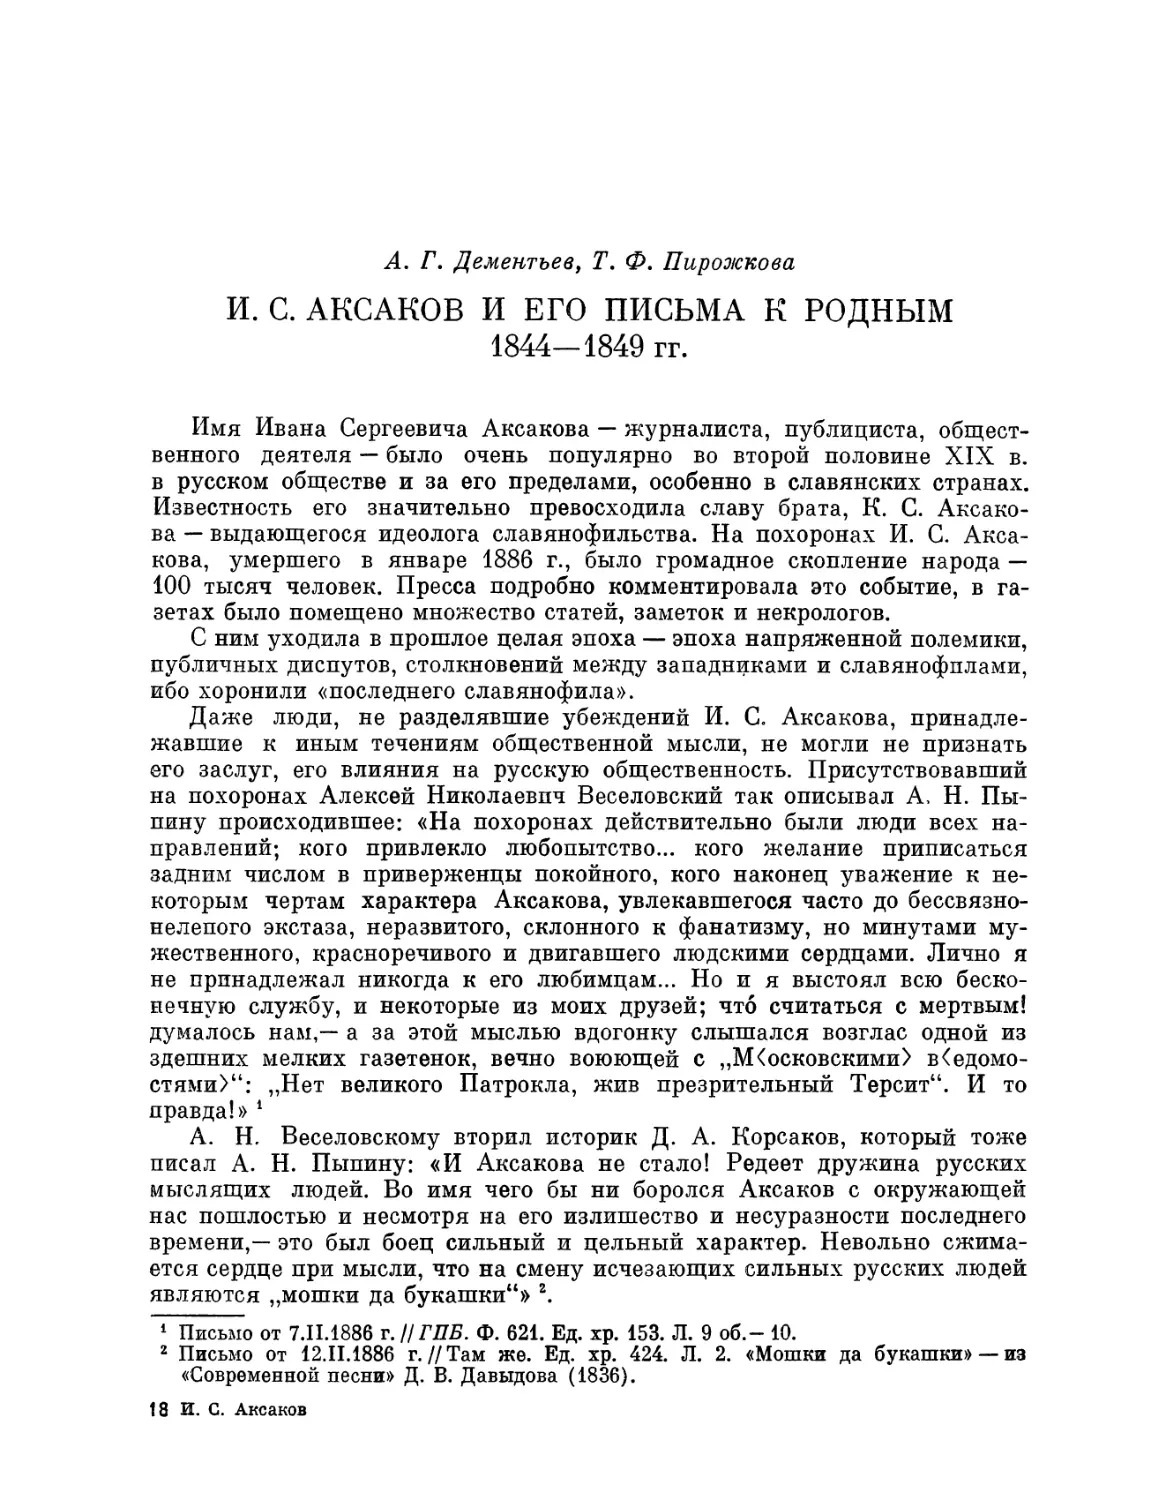 А.Г. Дементьев, Т.Ф. Пирожкова. И.С. Аксаков и его письма к родным. 1844-1849 гг.